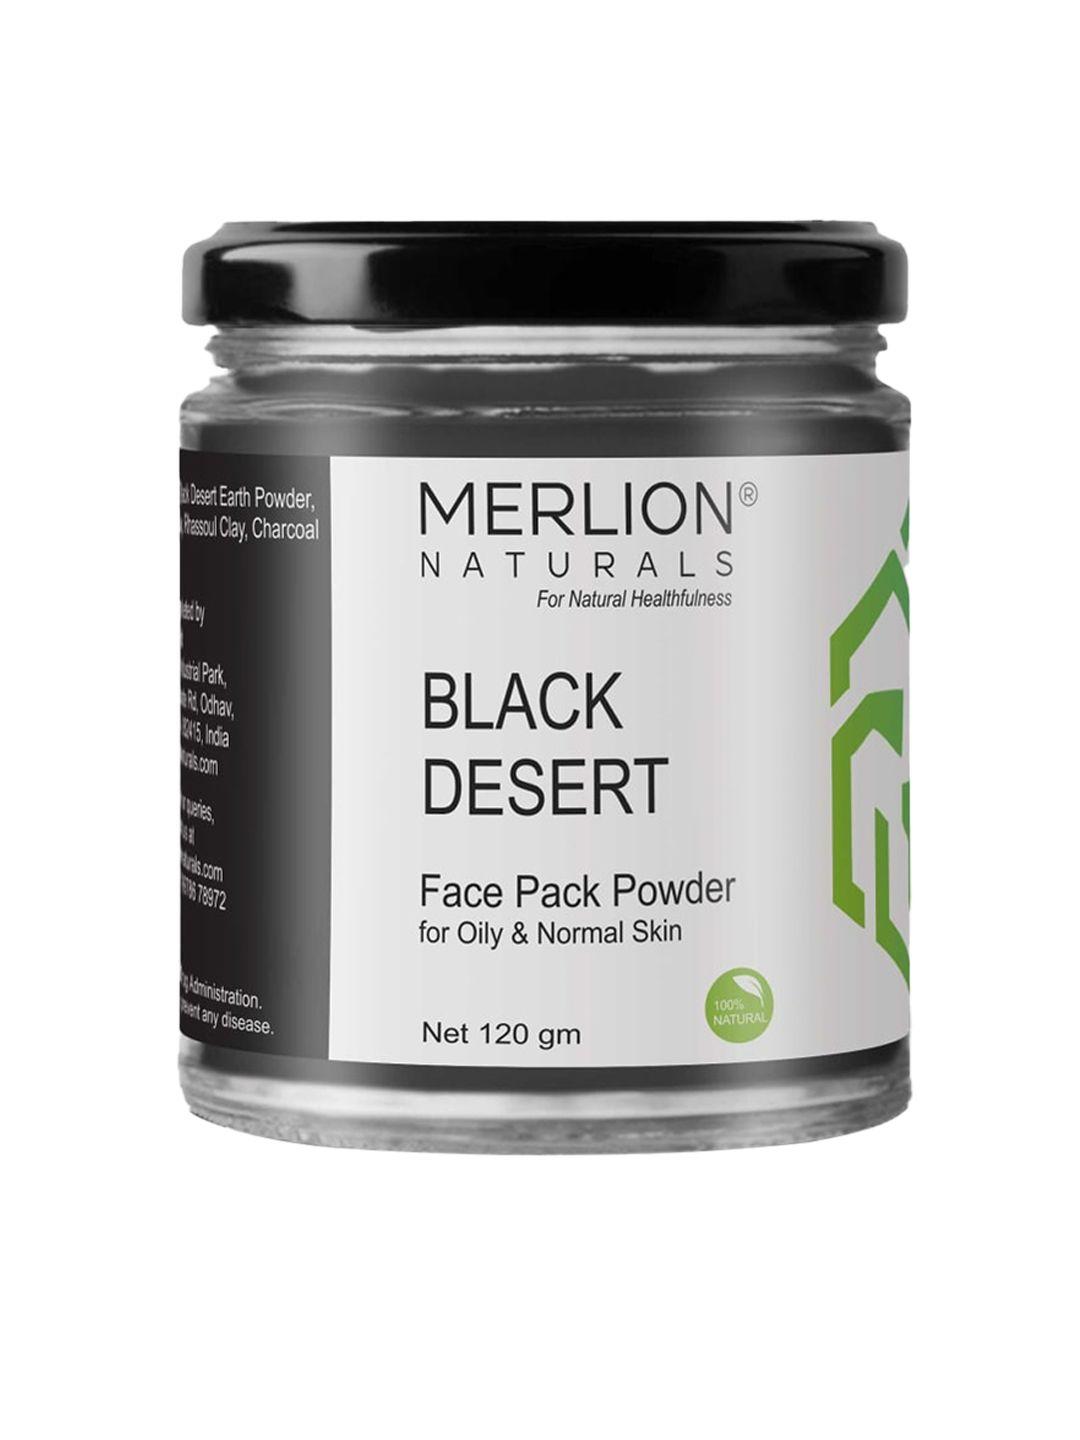 merlion naturals black desert face pack powder for oily & normal skin - 120 g